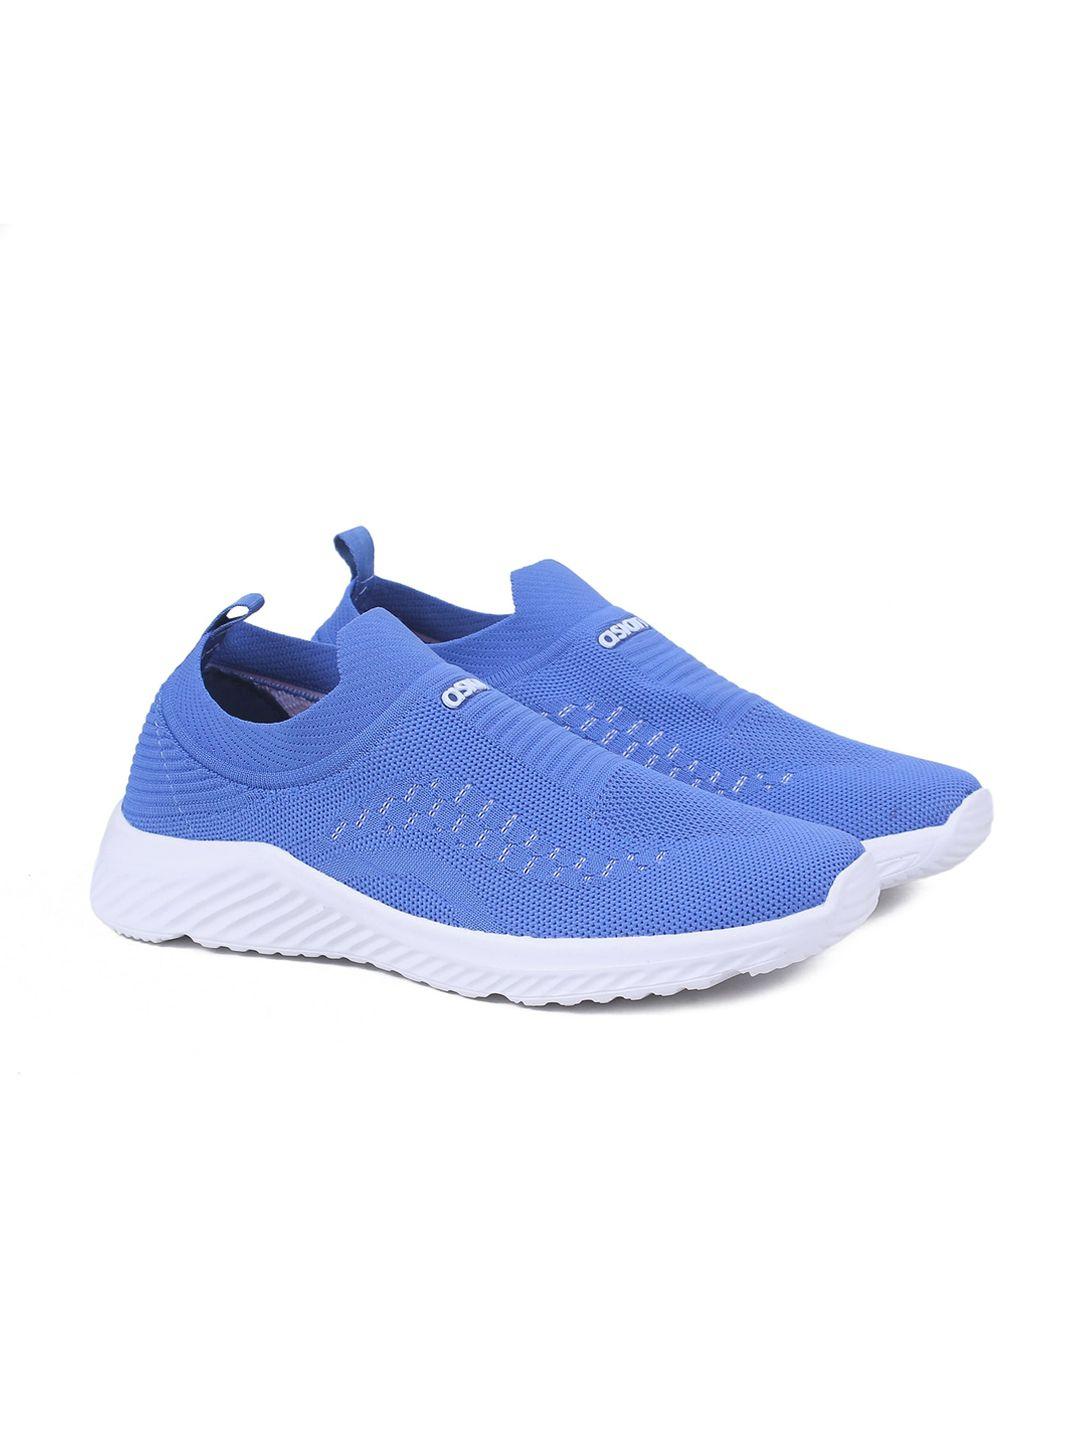 asian-men-blue-woven-design-slip-on-sneakers